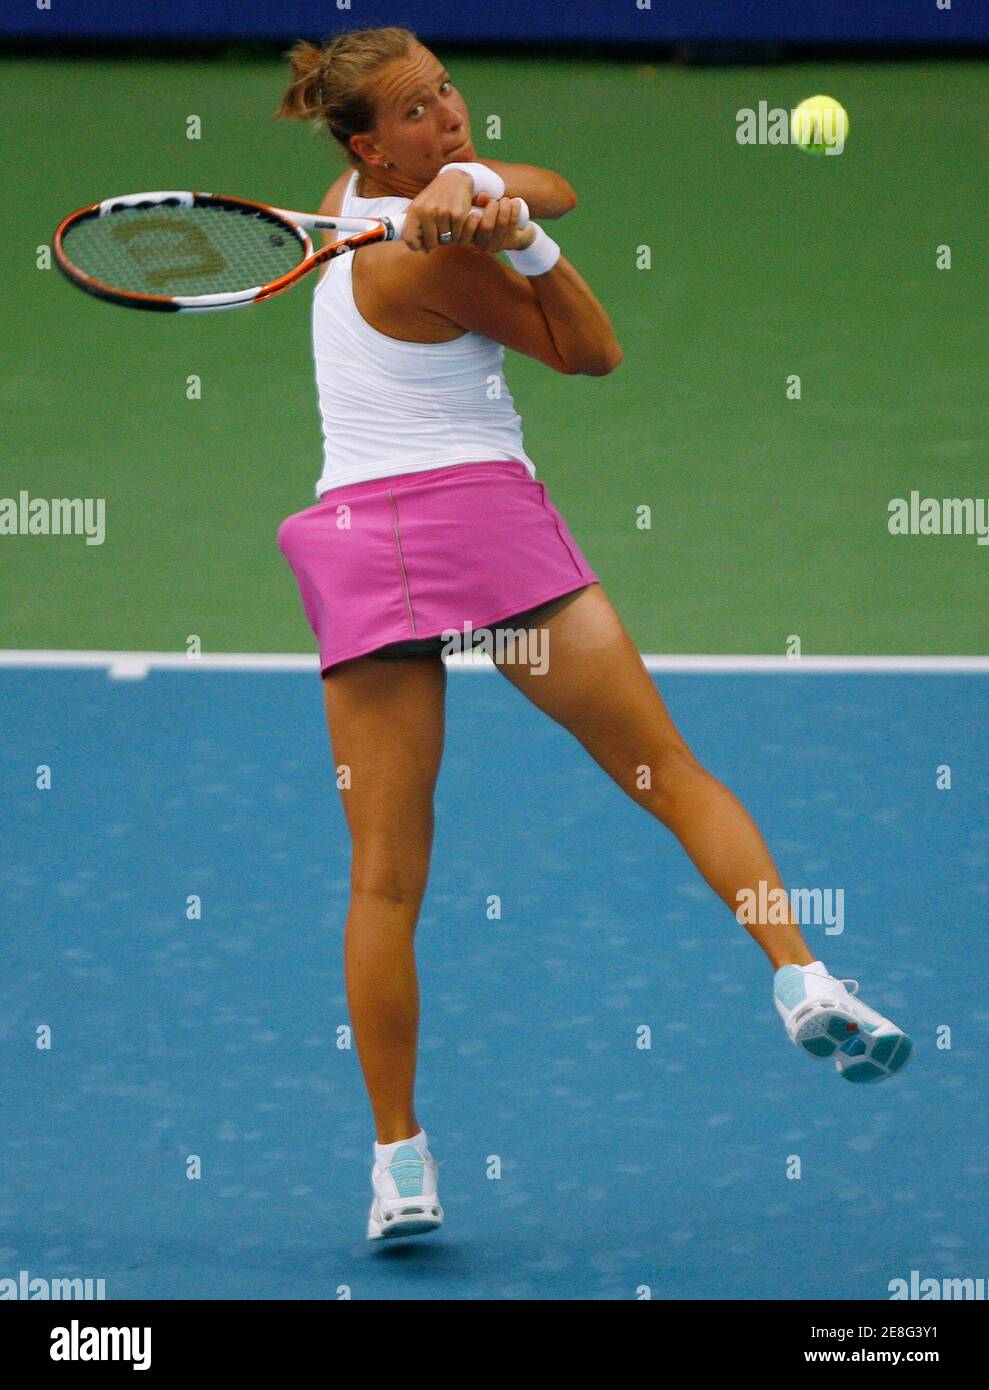 Barbora Zahlavova Strycova della Repubblica Ceca ha fatto ritorno durante la sua partita contro Akgul Amanmuradova dell'Uzbekistan al torneo di tennis Pattaya Women's Open di Pattaya il 5 febbraio 2008. REUTERS/Chaiwat Subprasom (THAILANDIA) Foto Stock